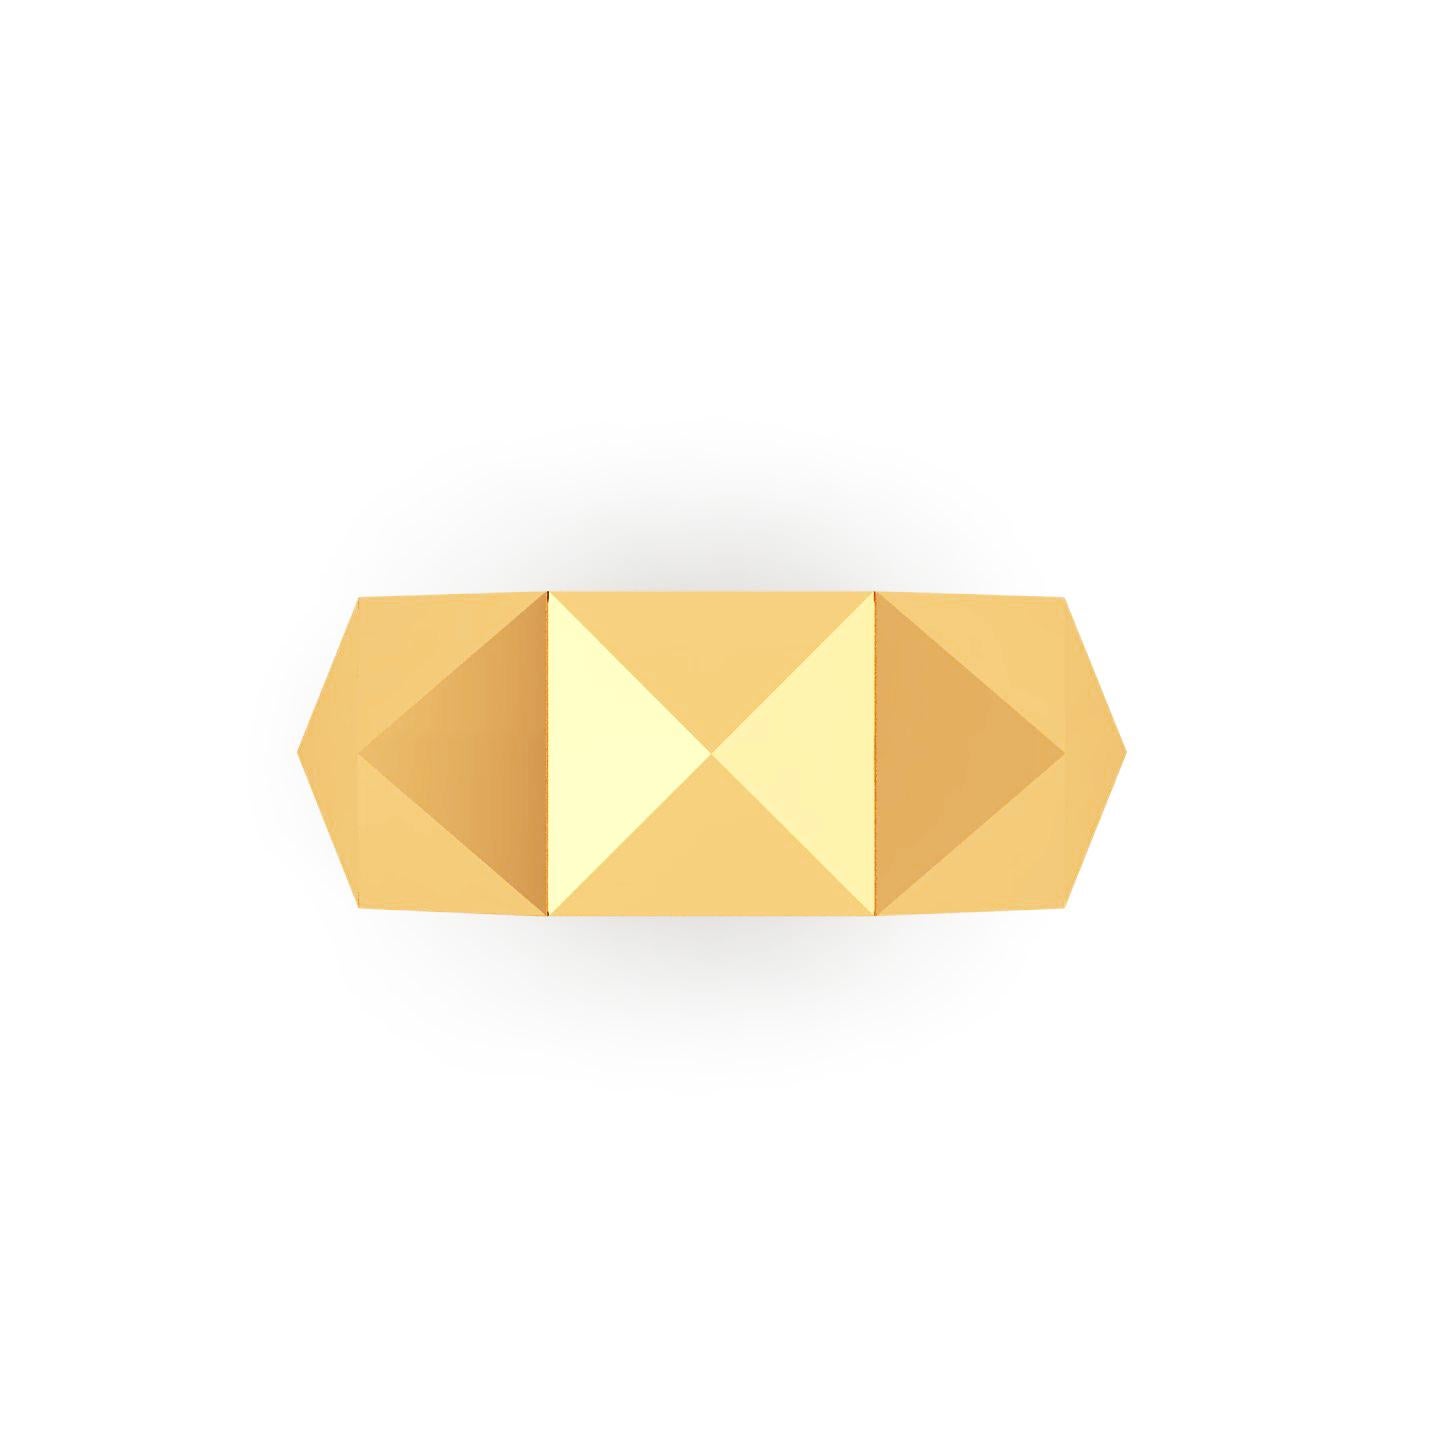 Pyramidenkollektion, der Eternity Pyramid Ring aus 18k Gelbgold, hergestellt in New York von FERRUCCI NY
Perfekt, um jeden Tag und jeden Abend zu tragen, immerwährender Stil.
Ring Größe 6, wir bieten kostenlose Größenanpassung bis zu 2 Größe nach